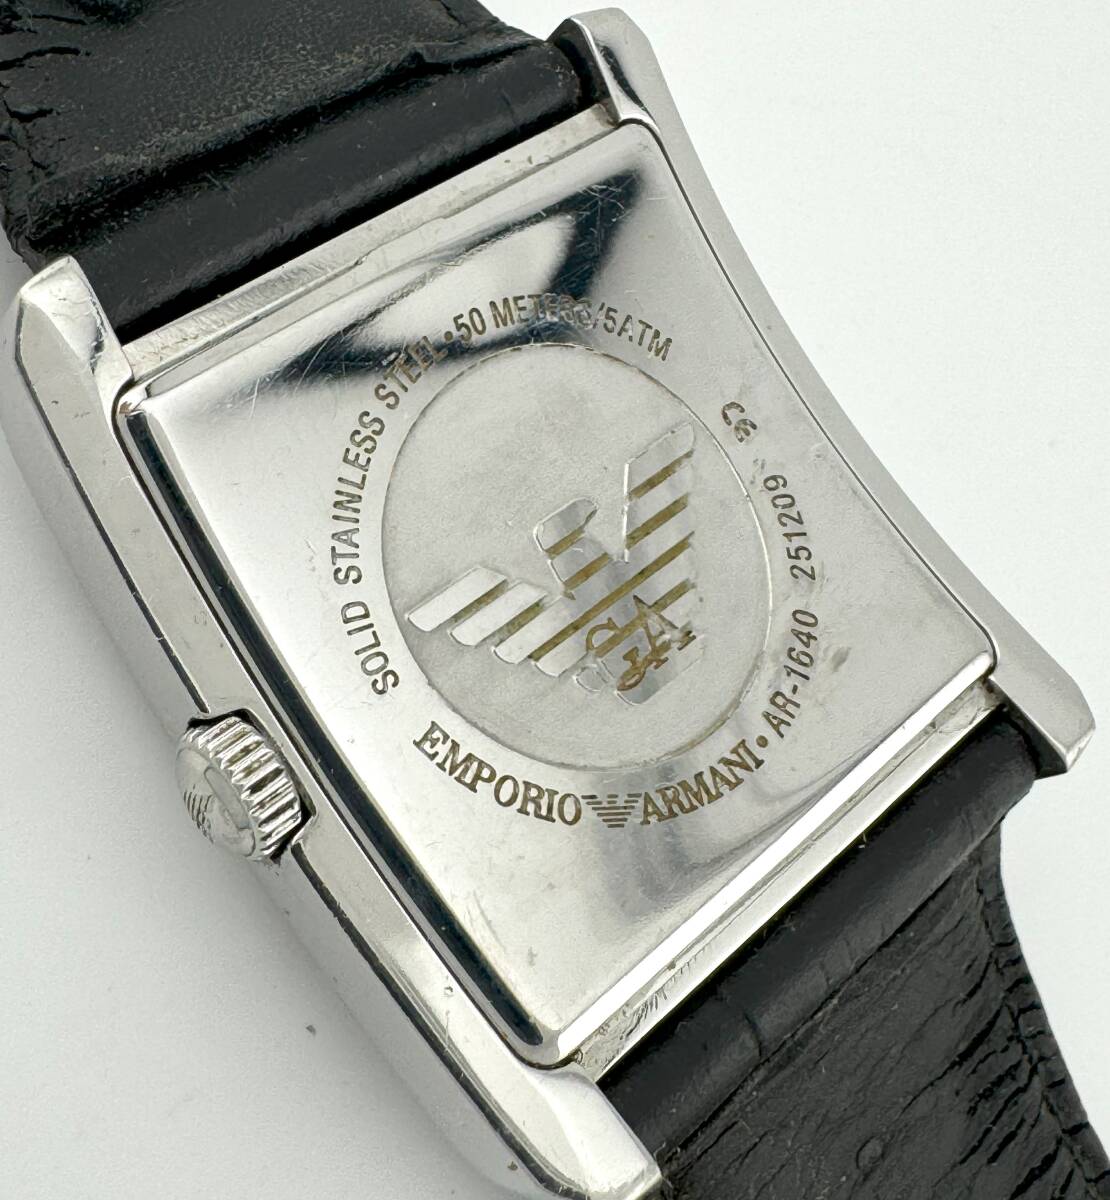 [ Emporio Armani 1 иен ~] *EMPORIOARMANI* квадратное черный циферблат наручные часы кварц работа мужской L7764